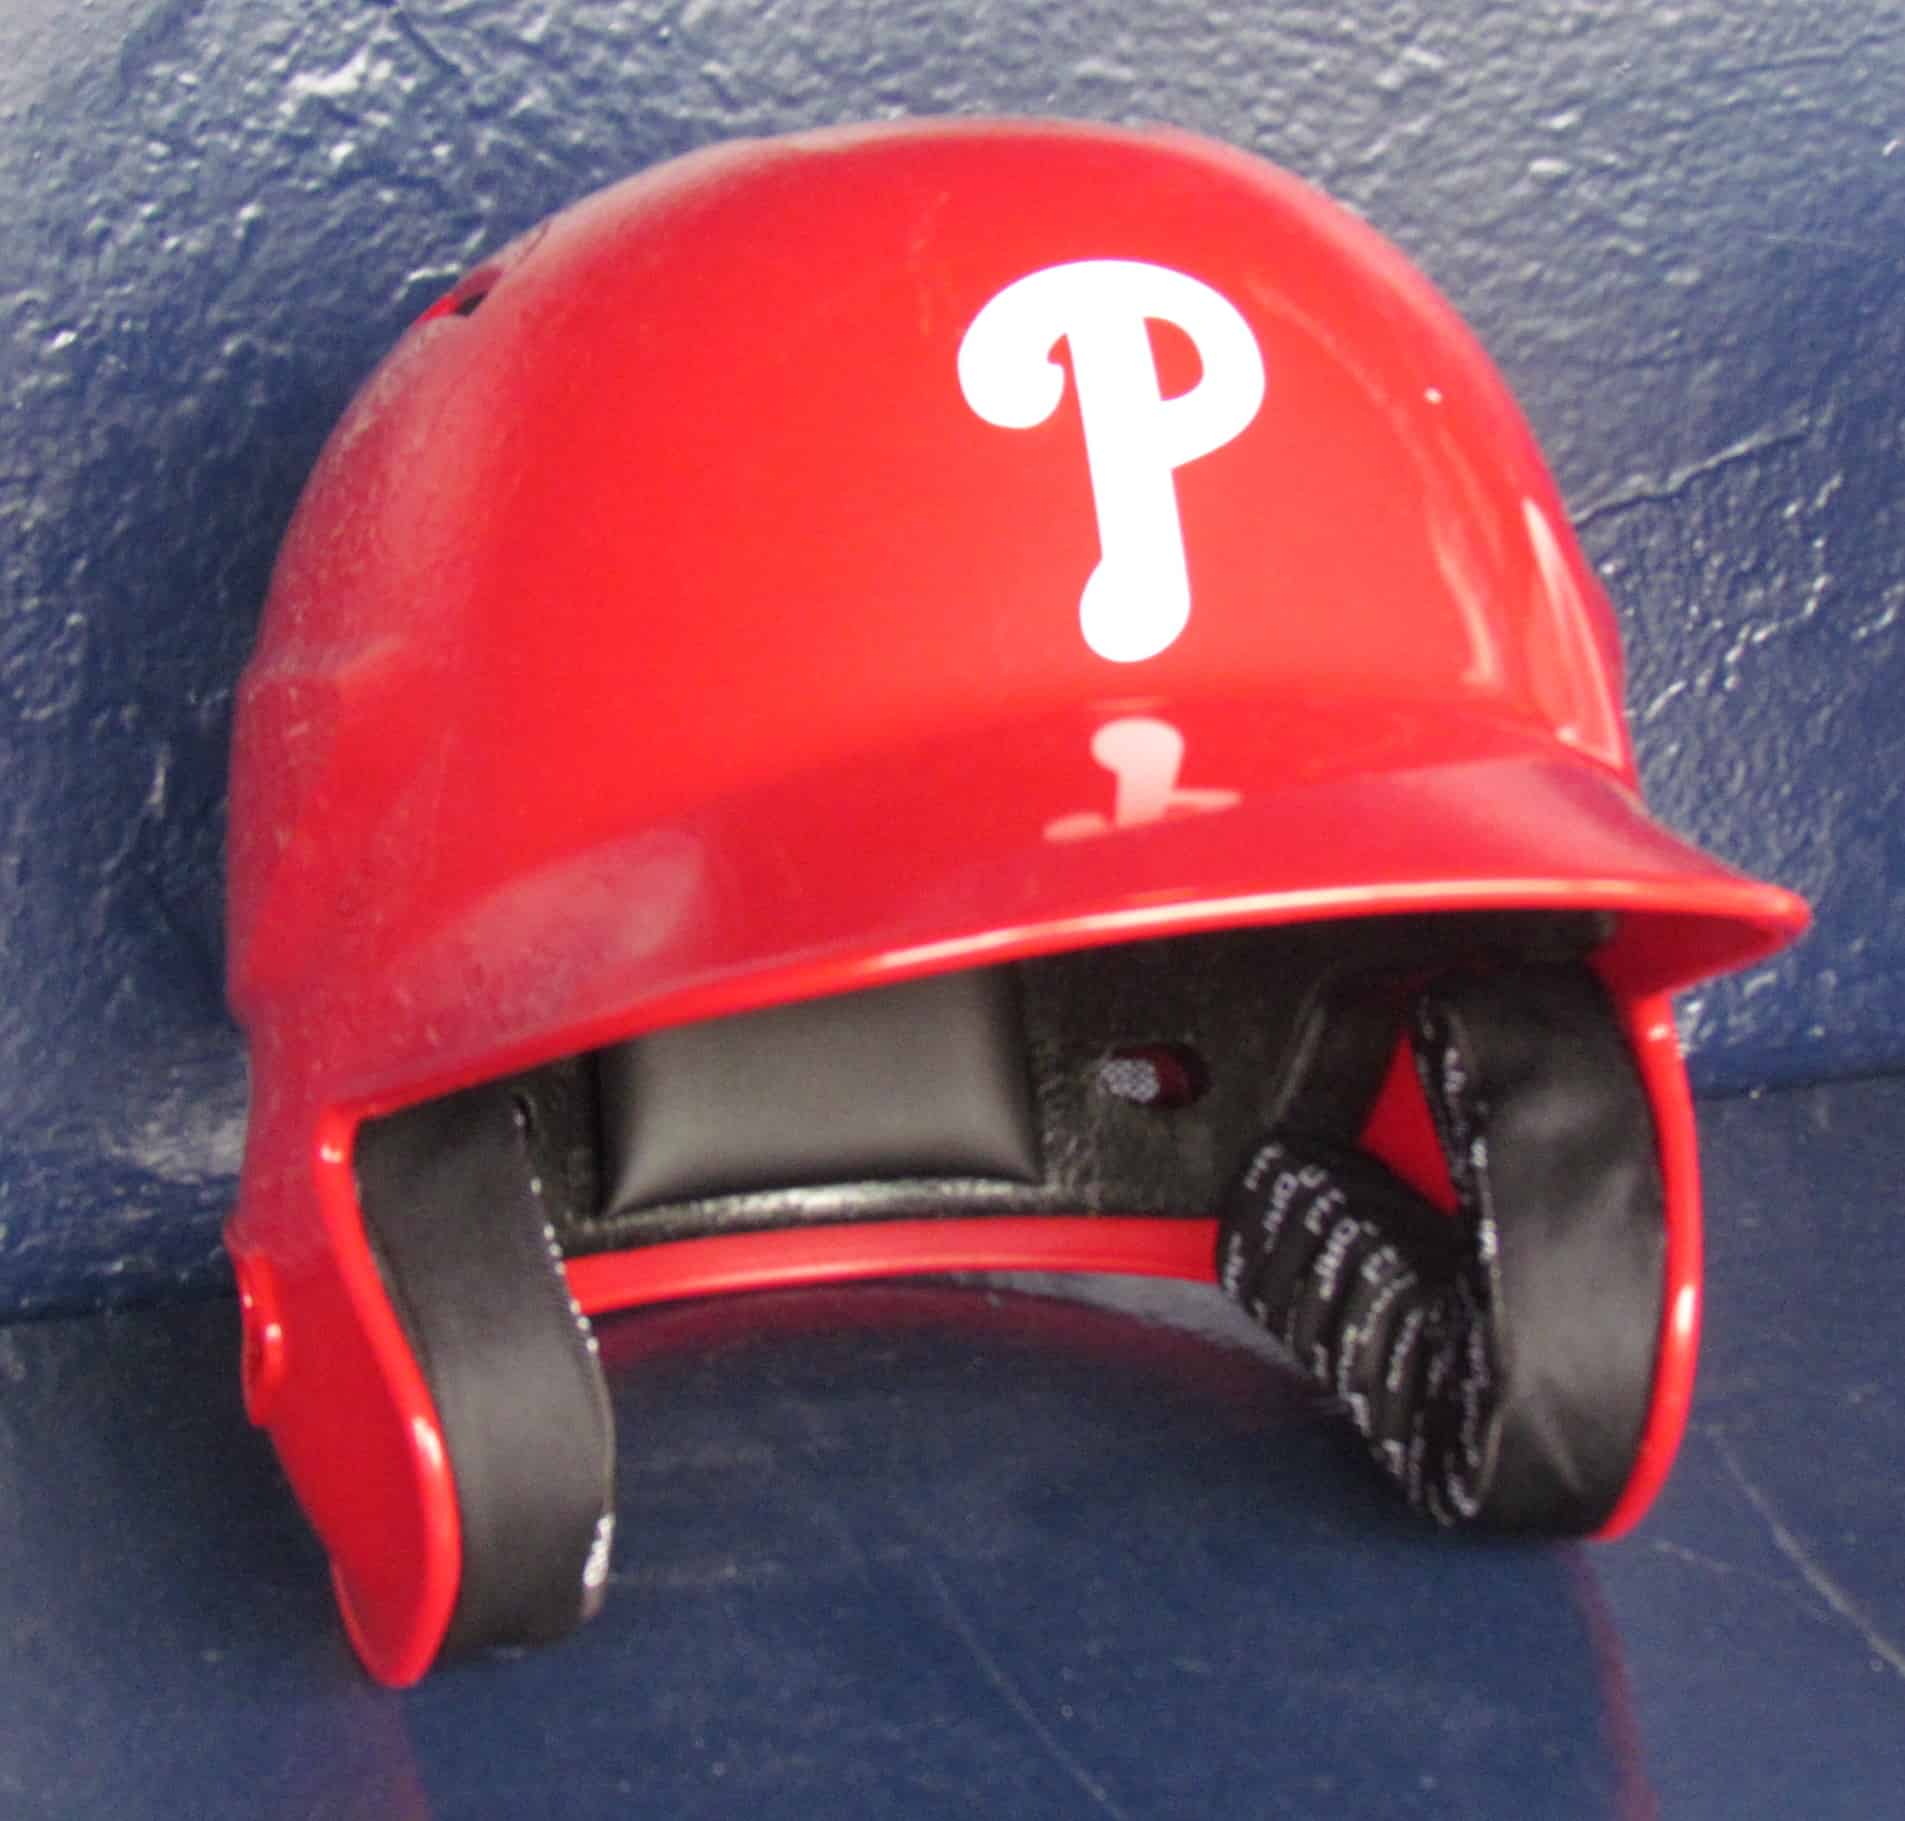 Phillies helmet